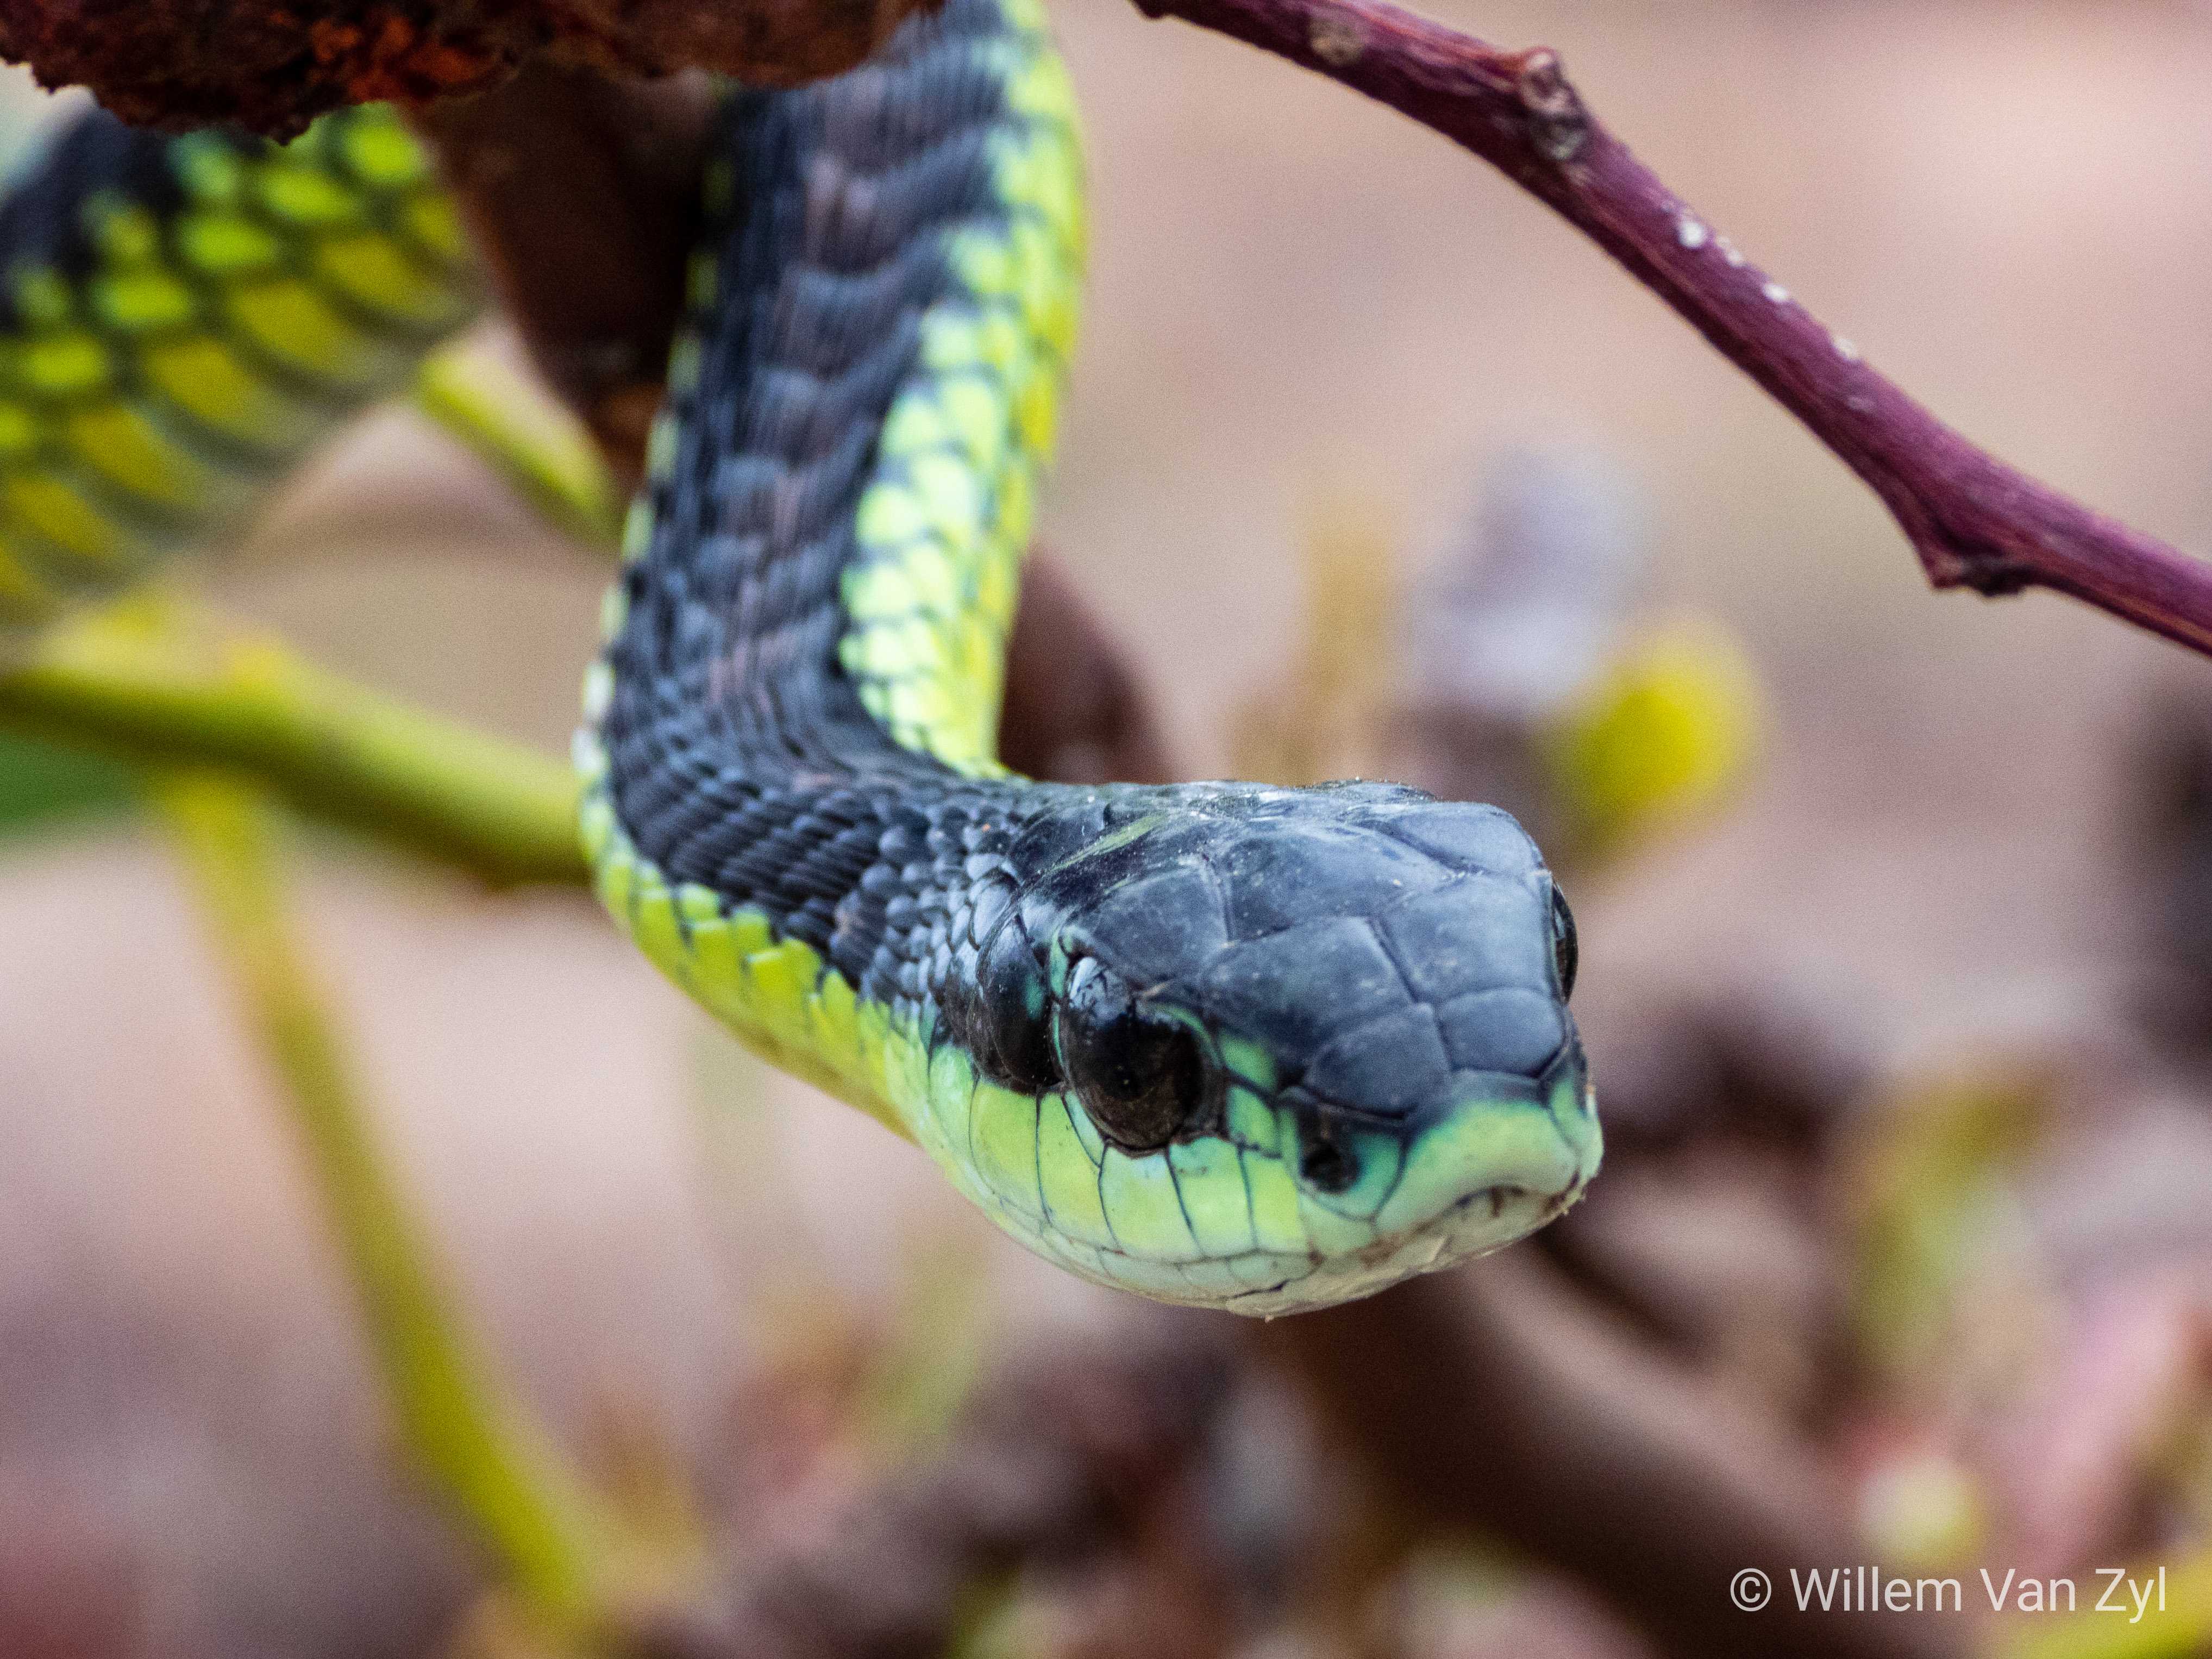 Ядовитые змеи - общее описание и название змей, опасность для человека,